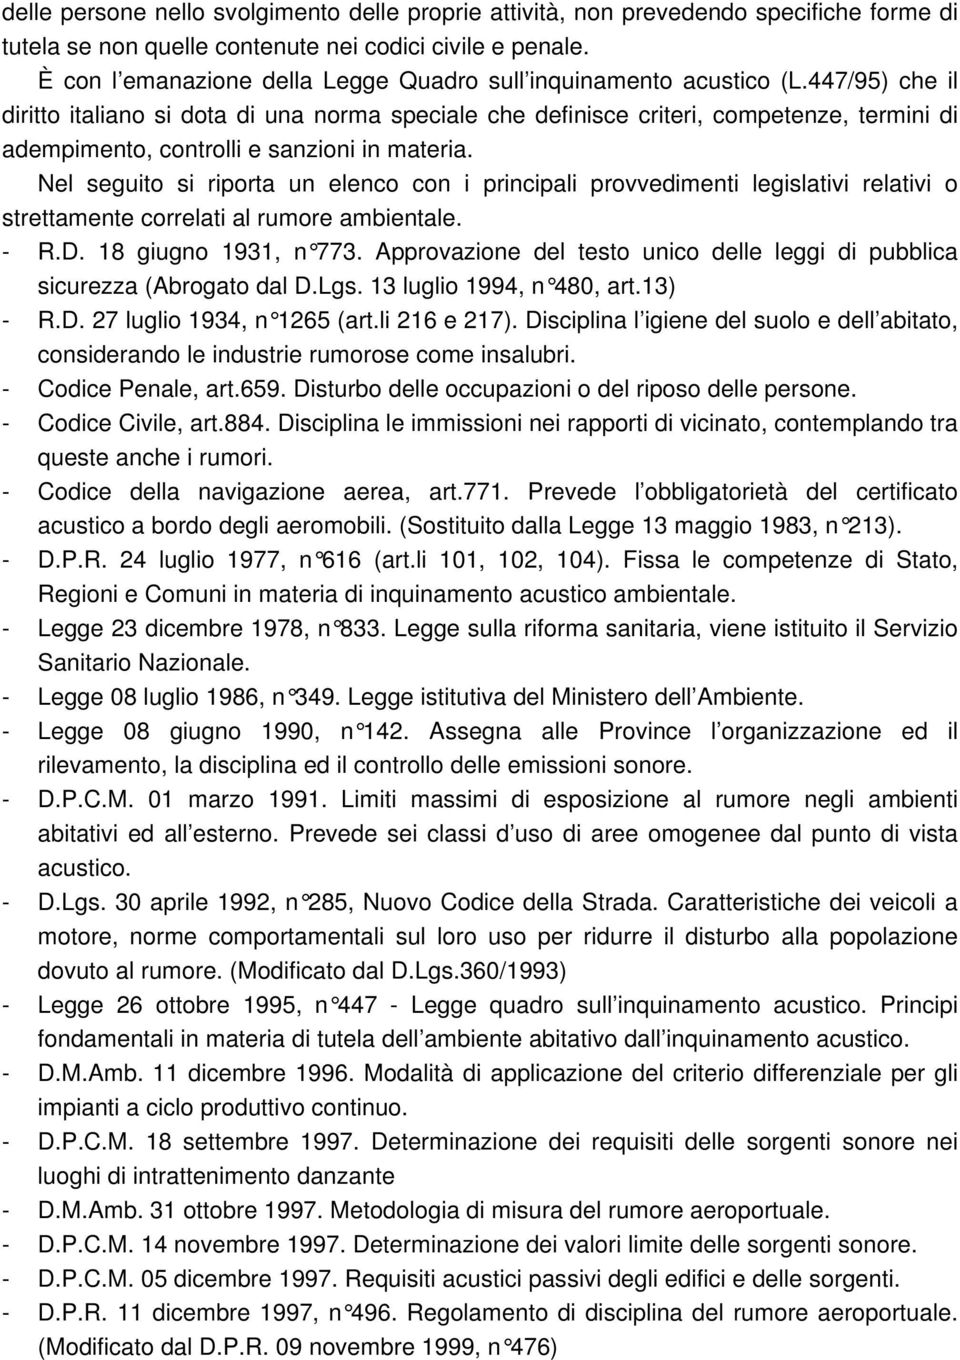 447/95) che il diritto italiano si dota di una norma speciale che definisce criteri, competenze, termini di adempimento, controlli e sanzioni in materia.